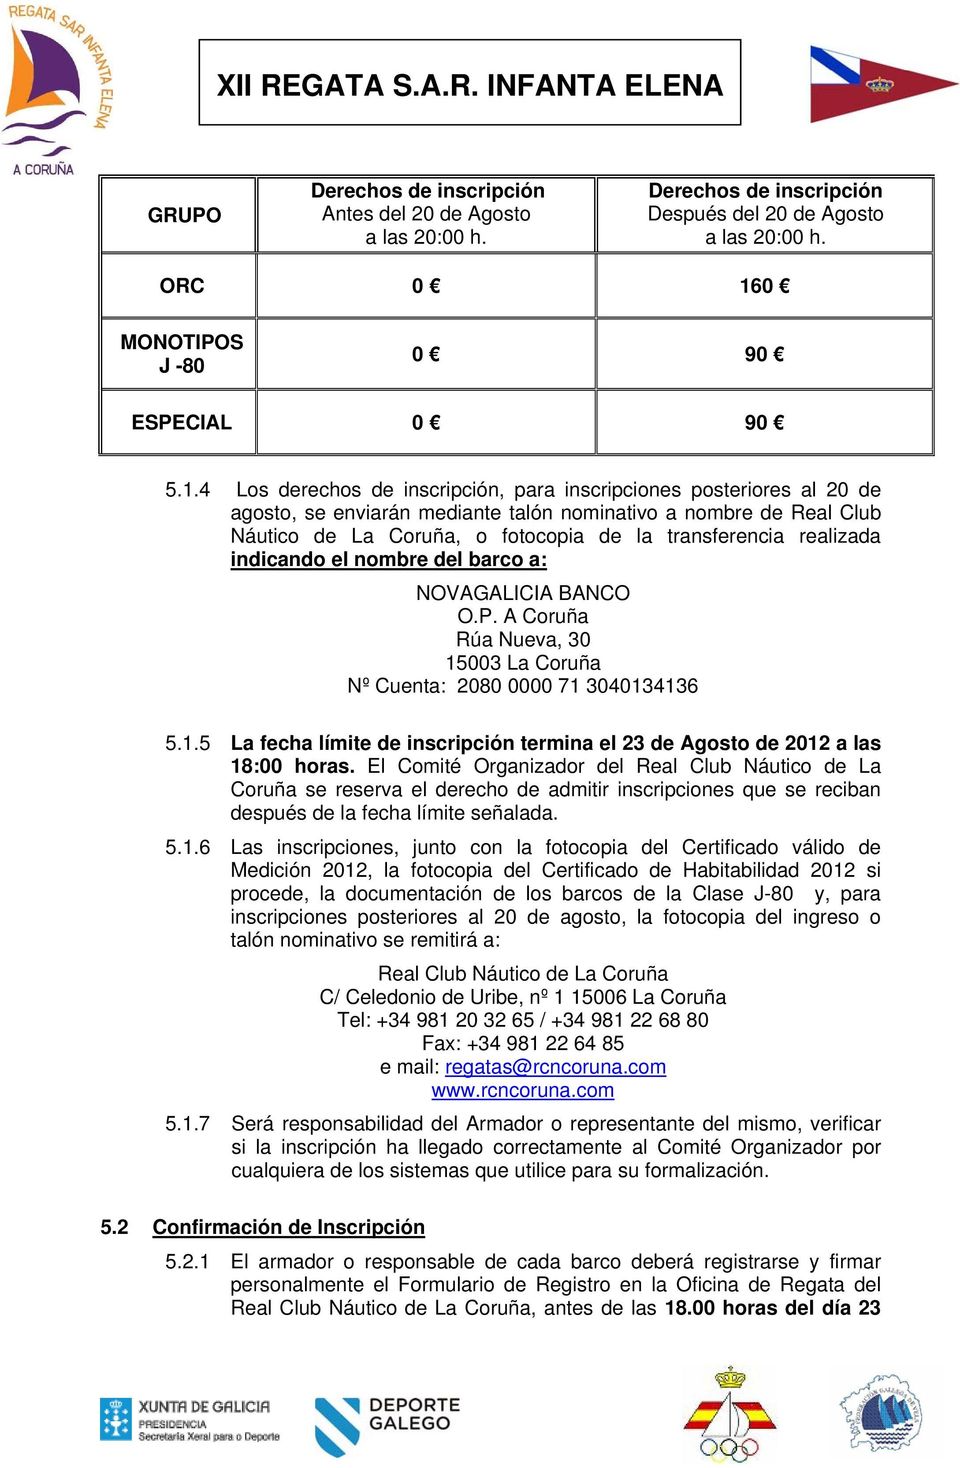 4 Los derechos de inscripción, para inscripciones posteriores al 20 de agosto, se enviarán mediante talón nominativo a nombre de Real Club Náutico de La Coruña, o fotocopia de la transferencia